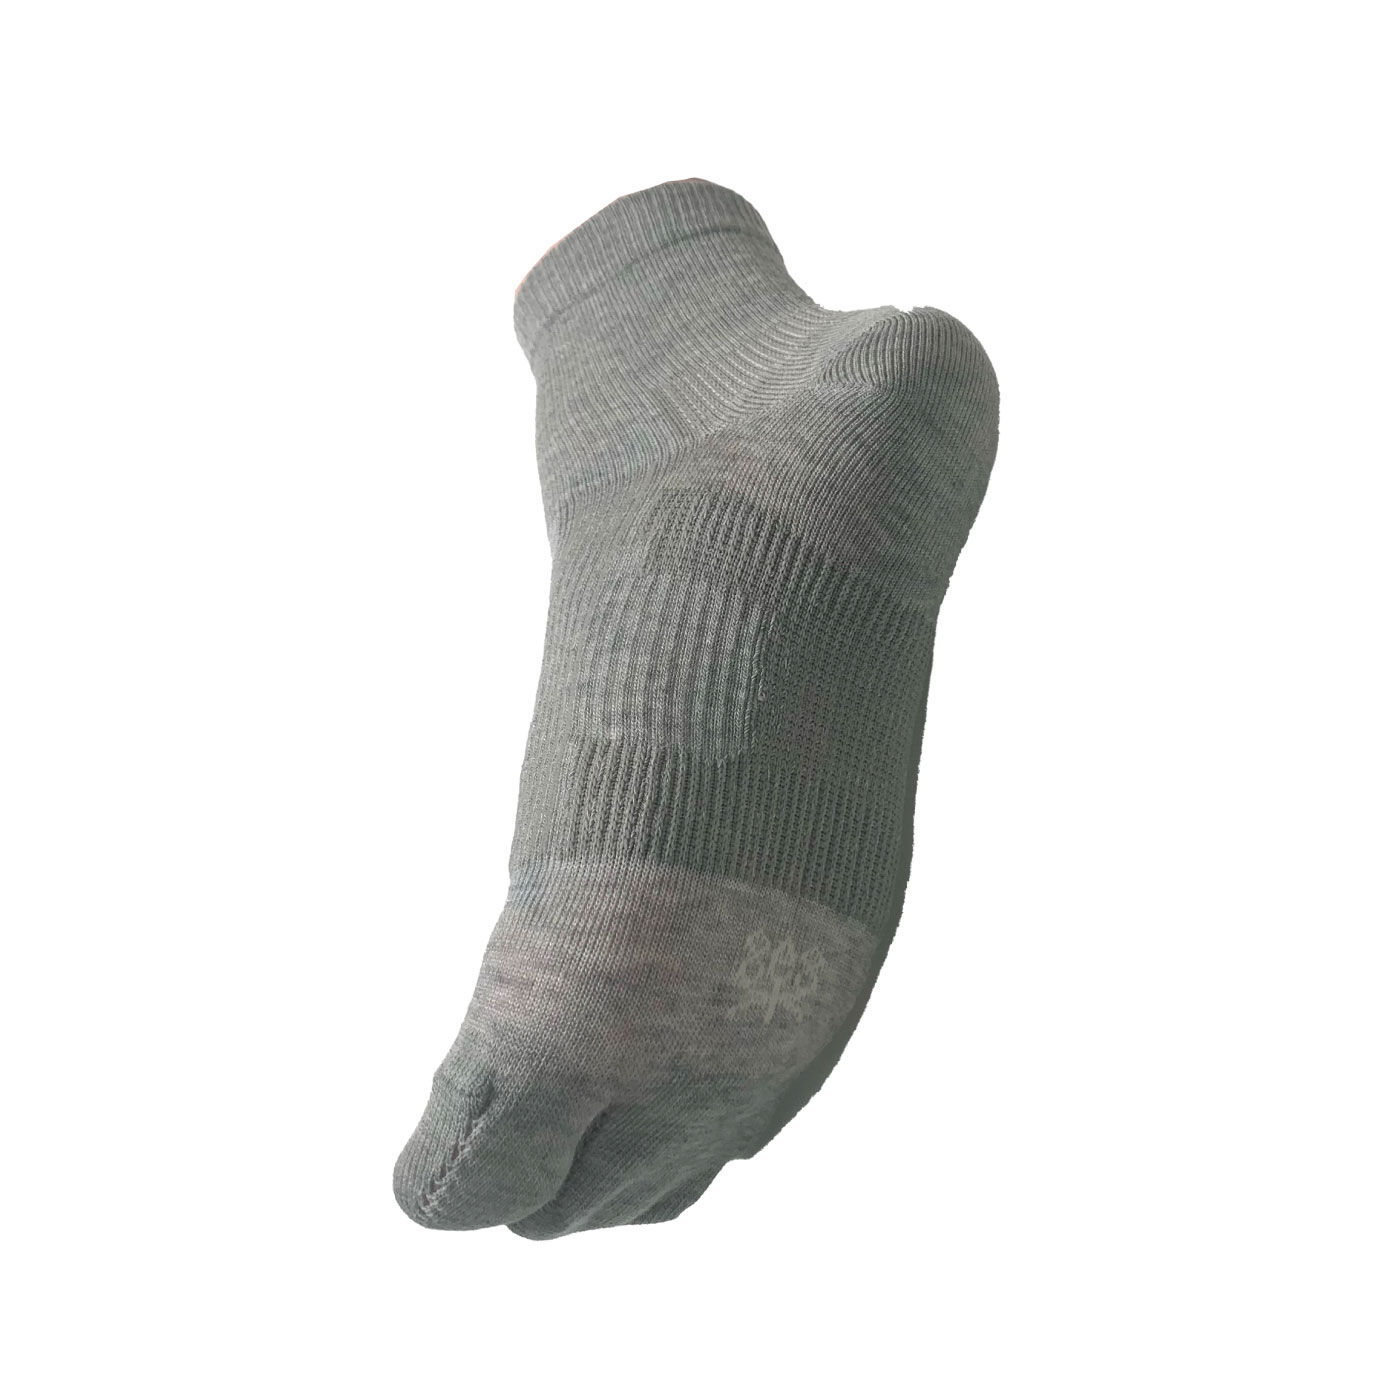 FELISSIMO PARTNERS|足のアーチを支える毎日のくつ下|足裏も甲もゴム糸を編み込んだ特殊製法で滑りにくい。